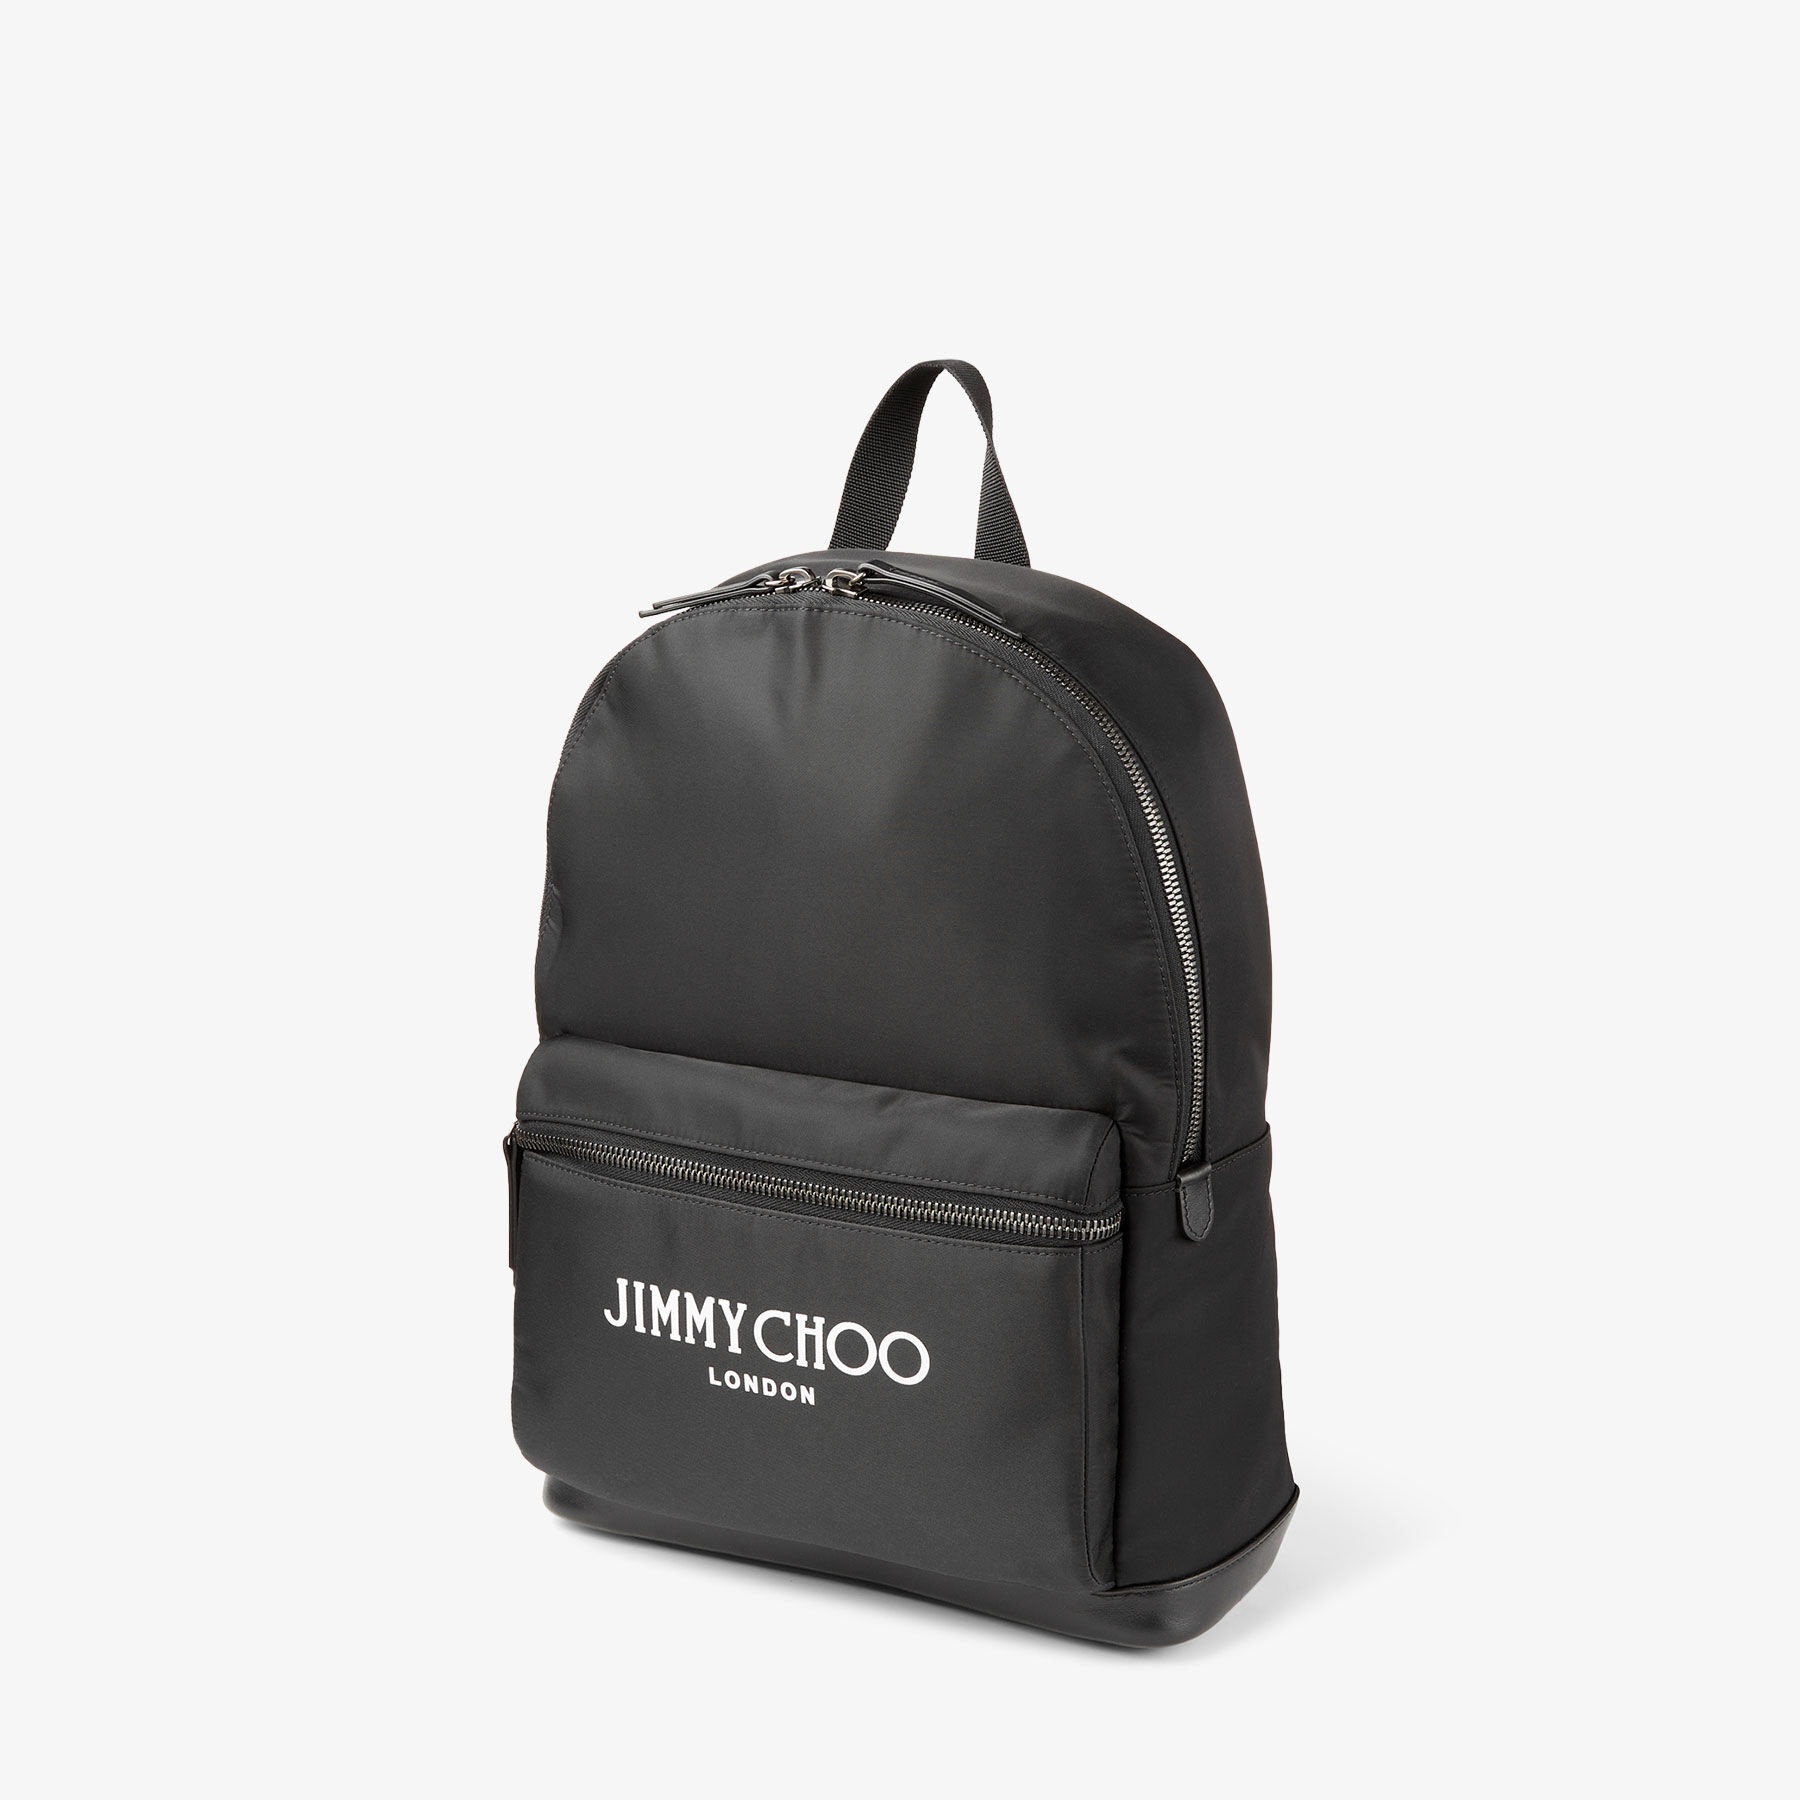 Wilmer
Black Nylon Backpack with Jimmy Choo Logo - 2